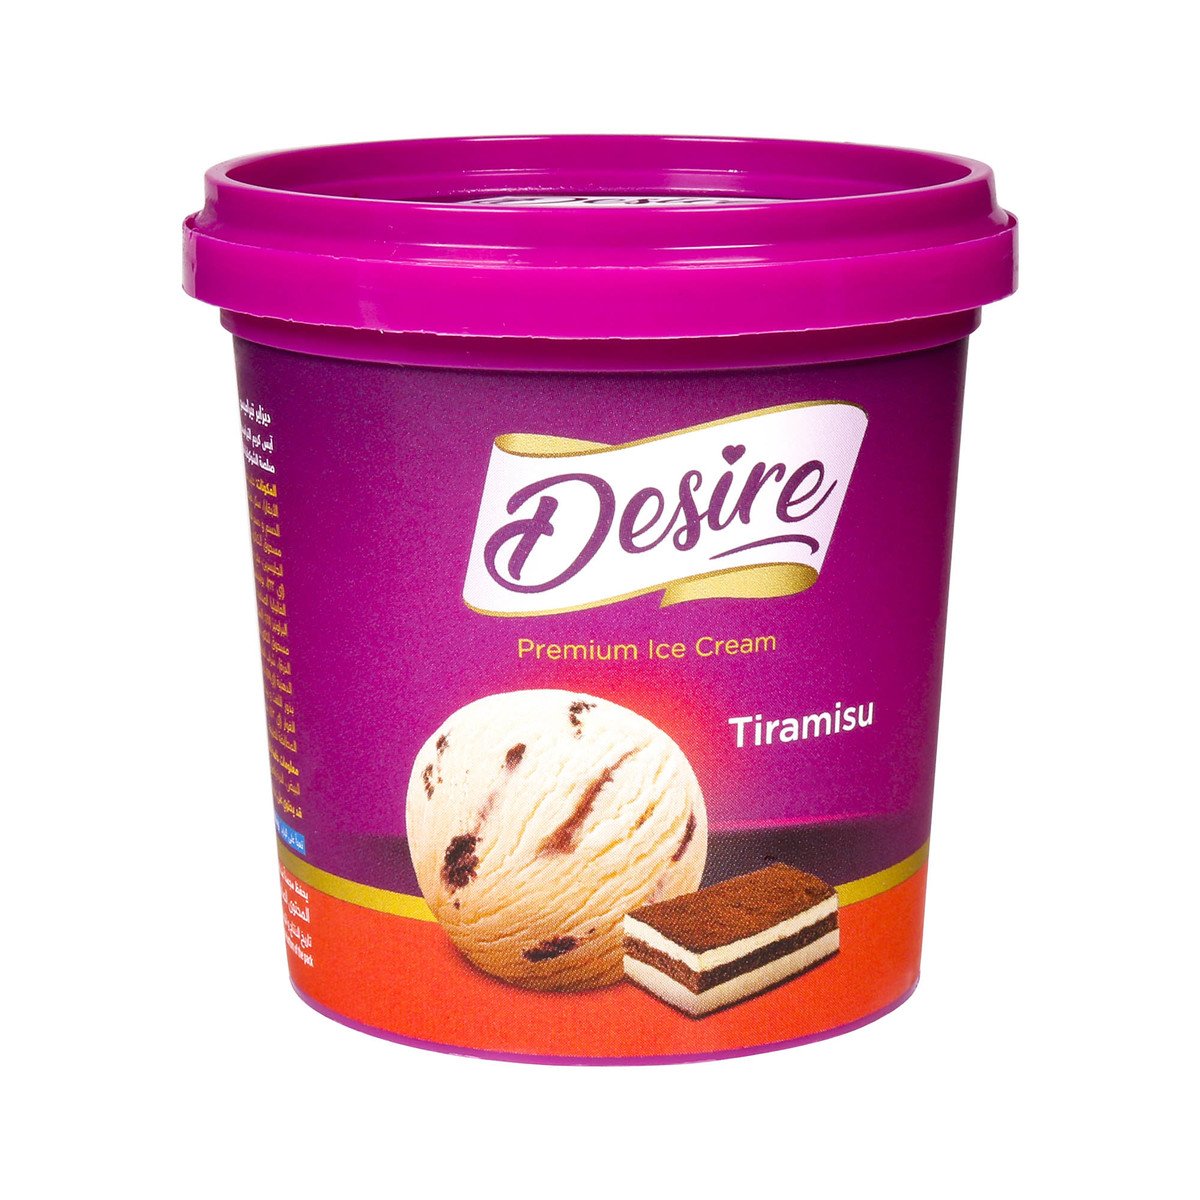 Desire Premium Ice Cream Tiramisu 125ml